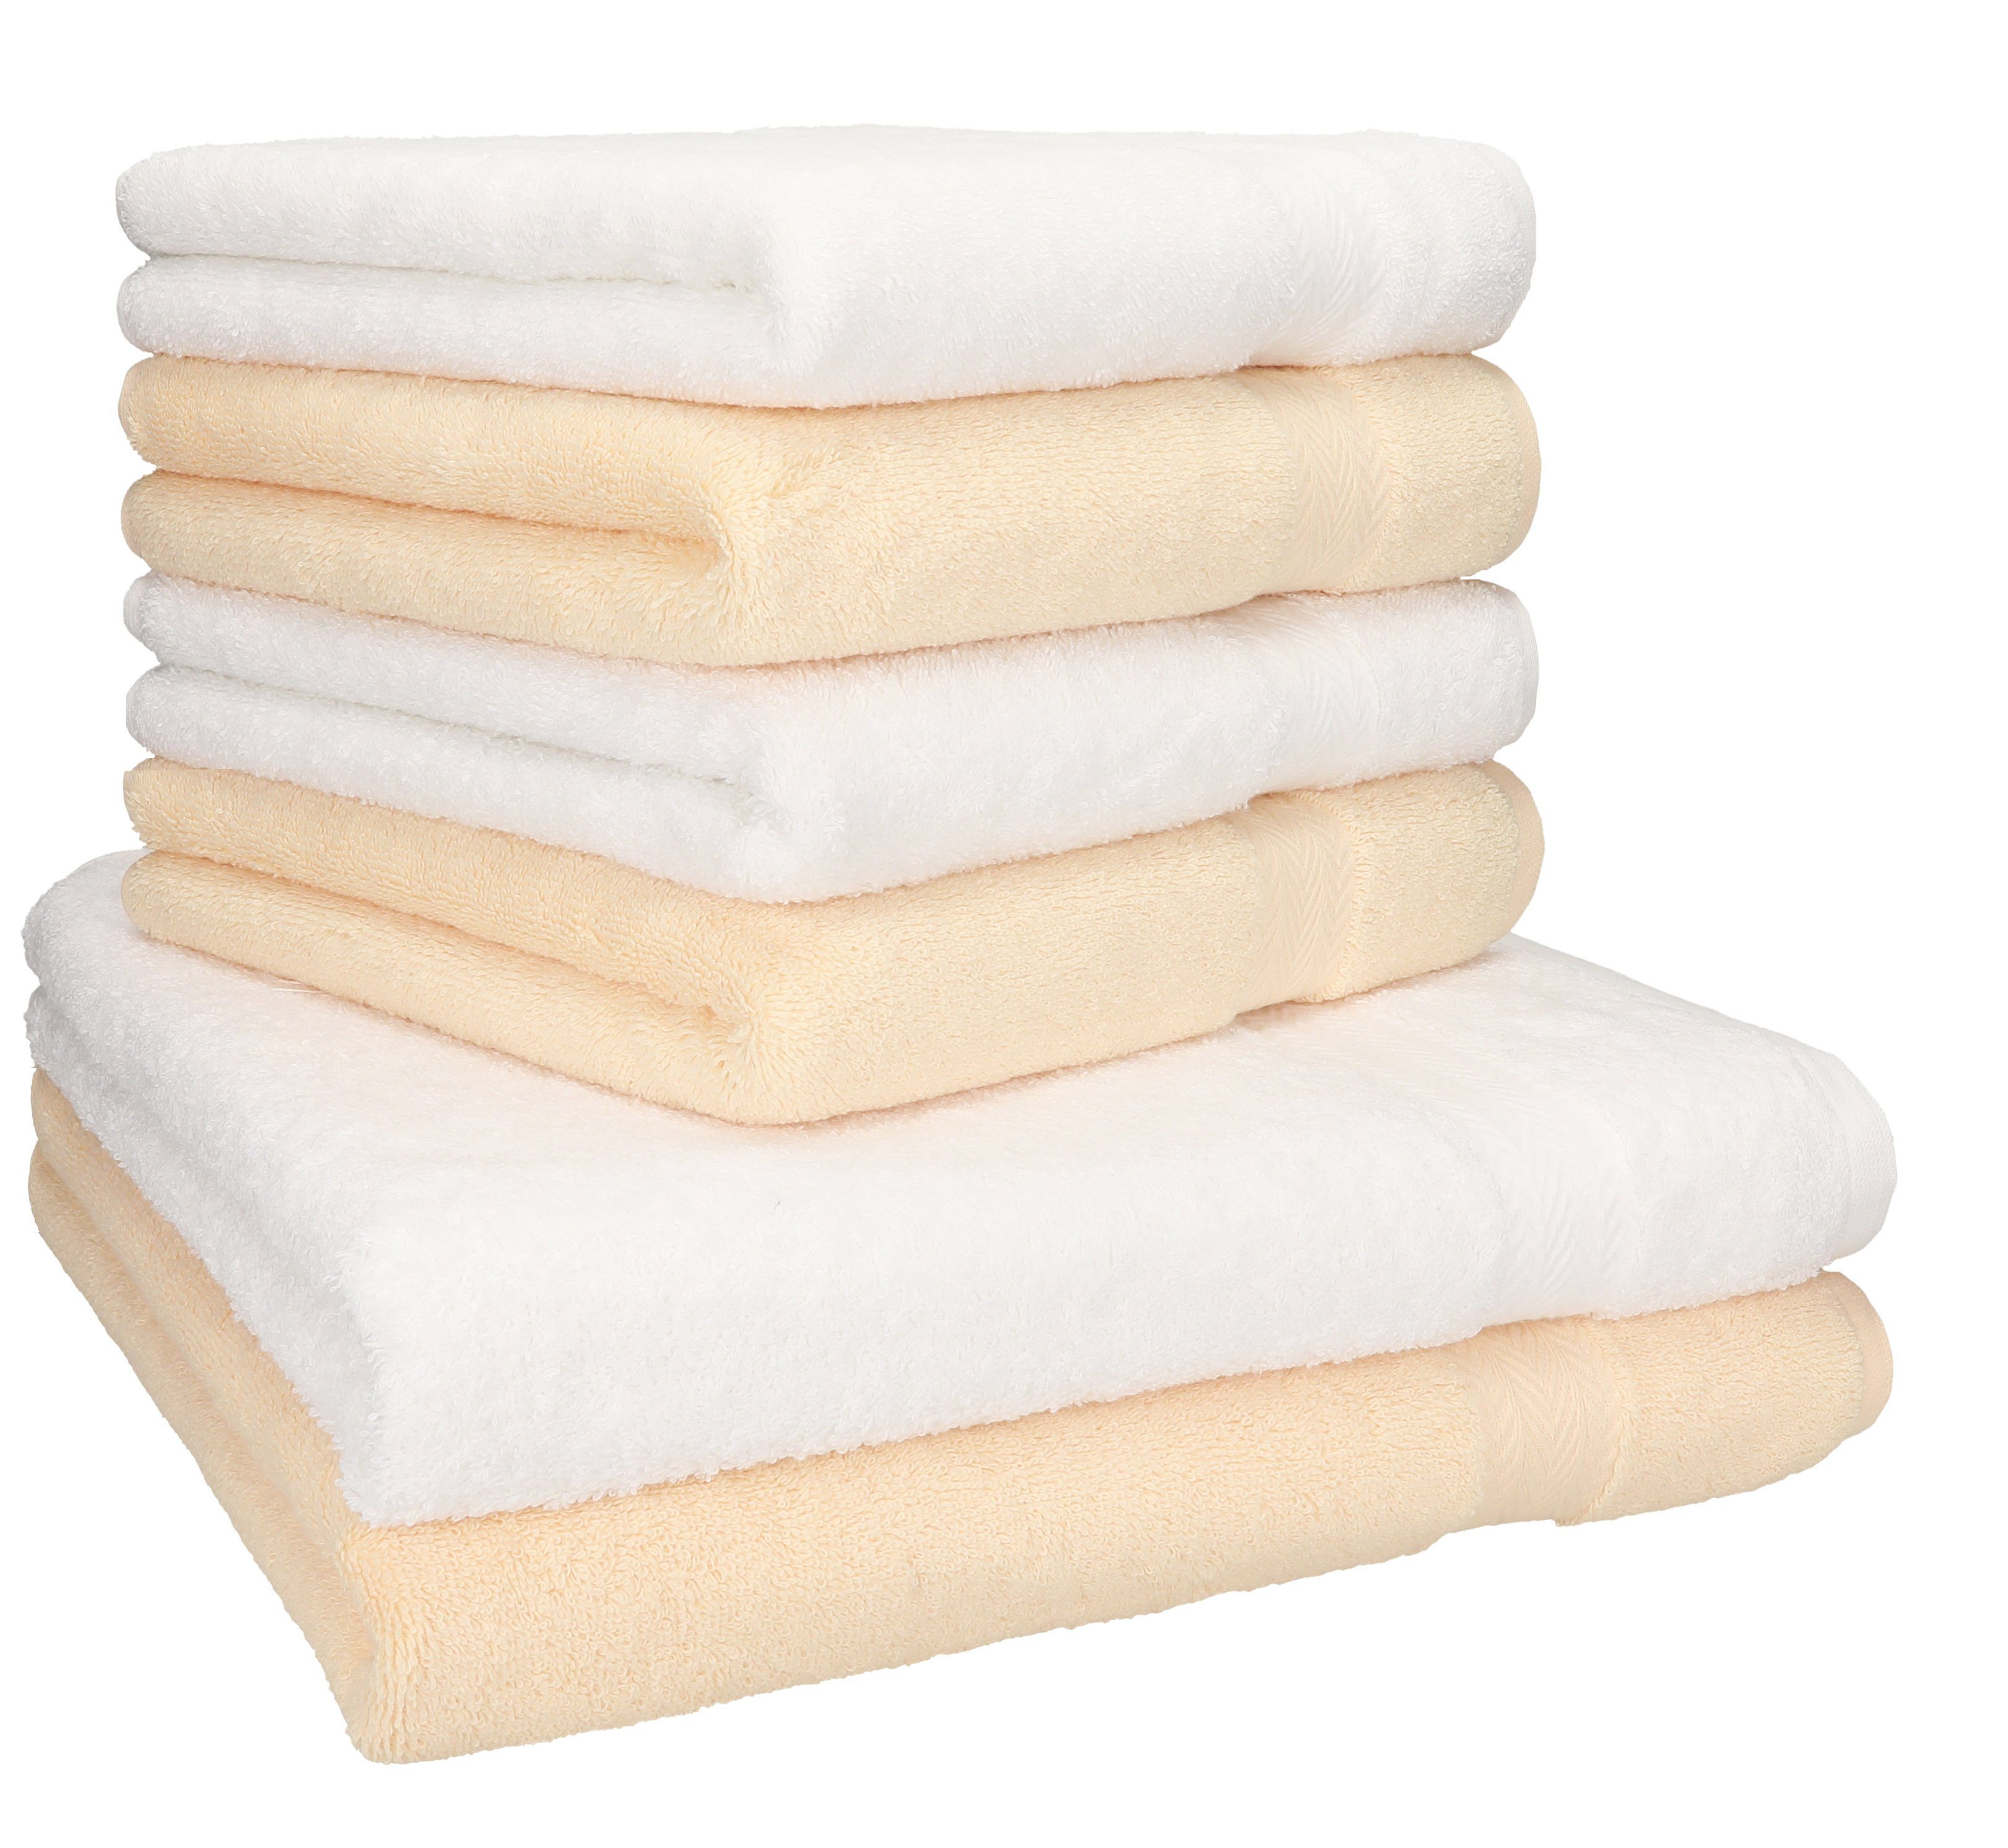 Betz Handtuch Set 6-TLG. Handtuch-Set Premium 100% Baumwolle 2 Duschtücher 4 Handtücher Farbe weiß und beige, 100% Baumwolle | Handtuch-Sets